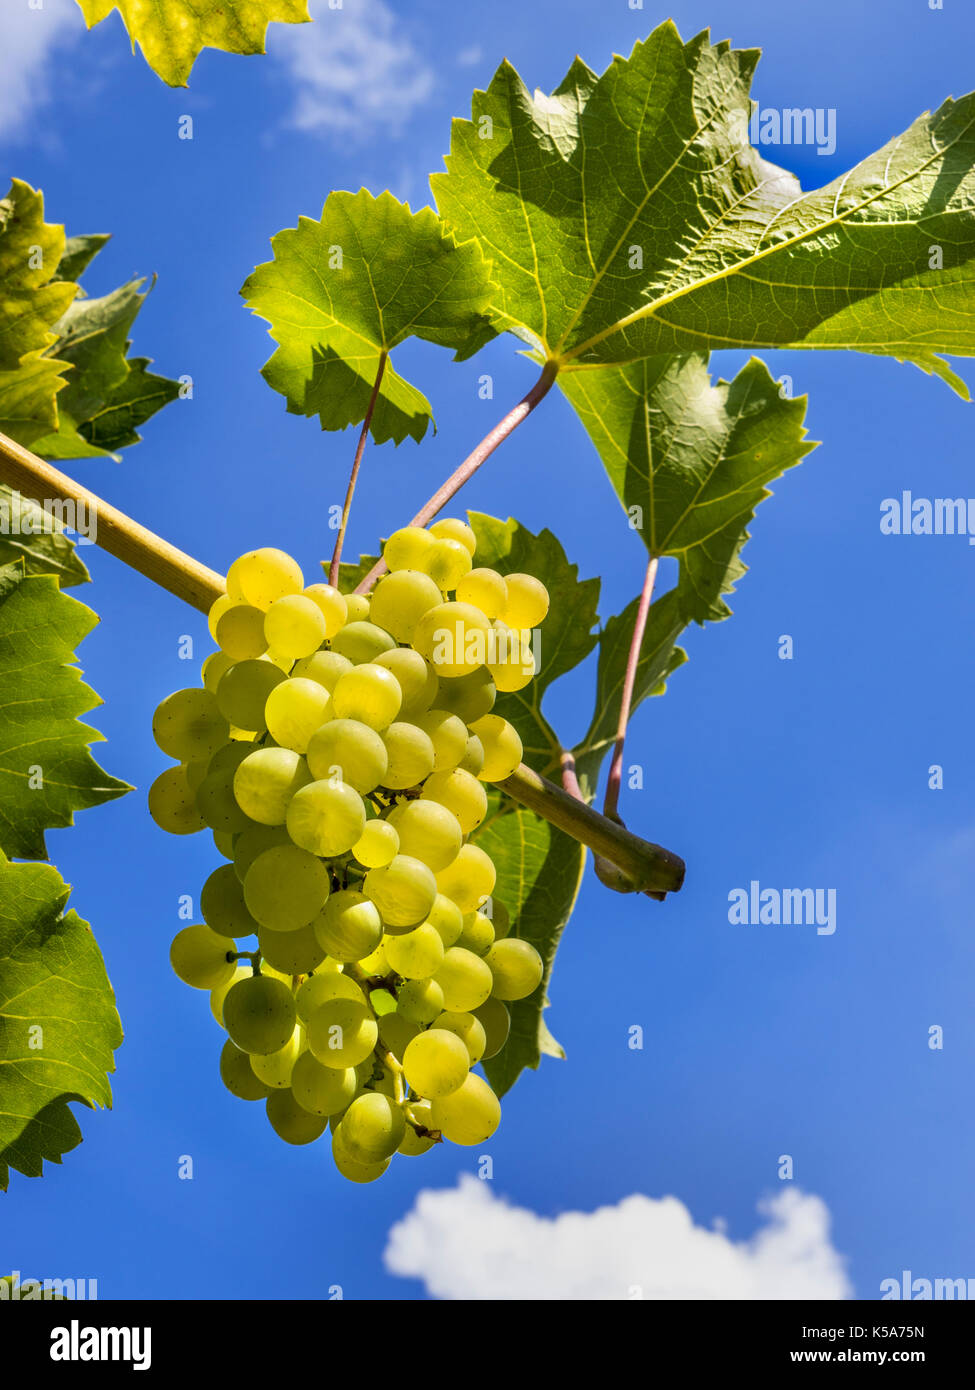 PHOENIX reife Trauben von Weißwein Trauben auf Rebe erwartet Ernte in UK Weinberg mit tiefblau gemäßigten sonnigen Himmel Hintergrund Stockfoto